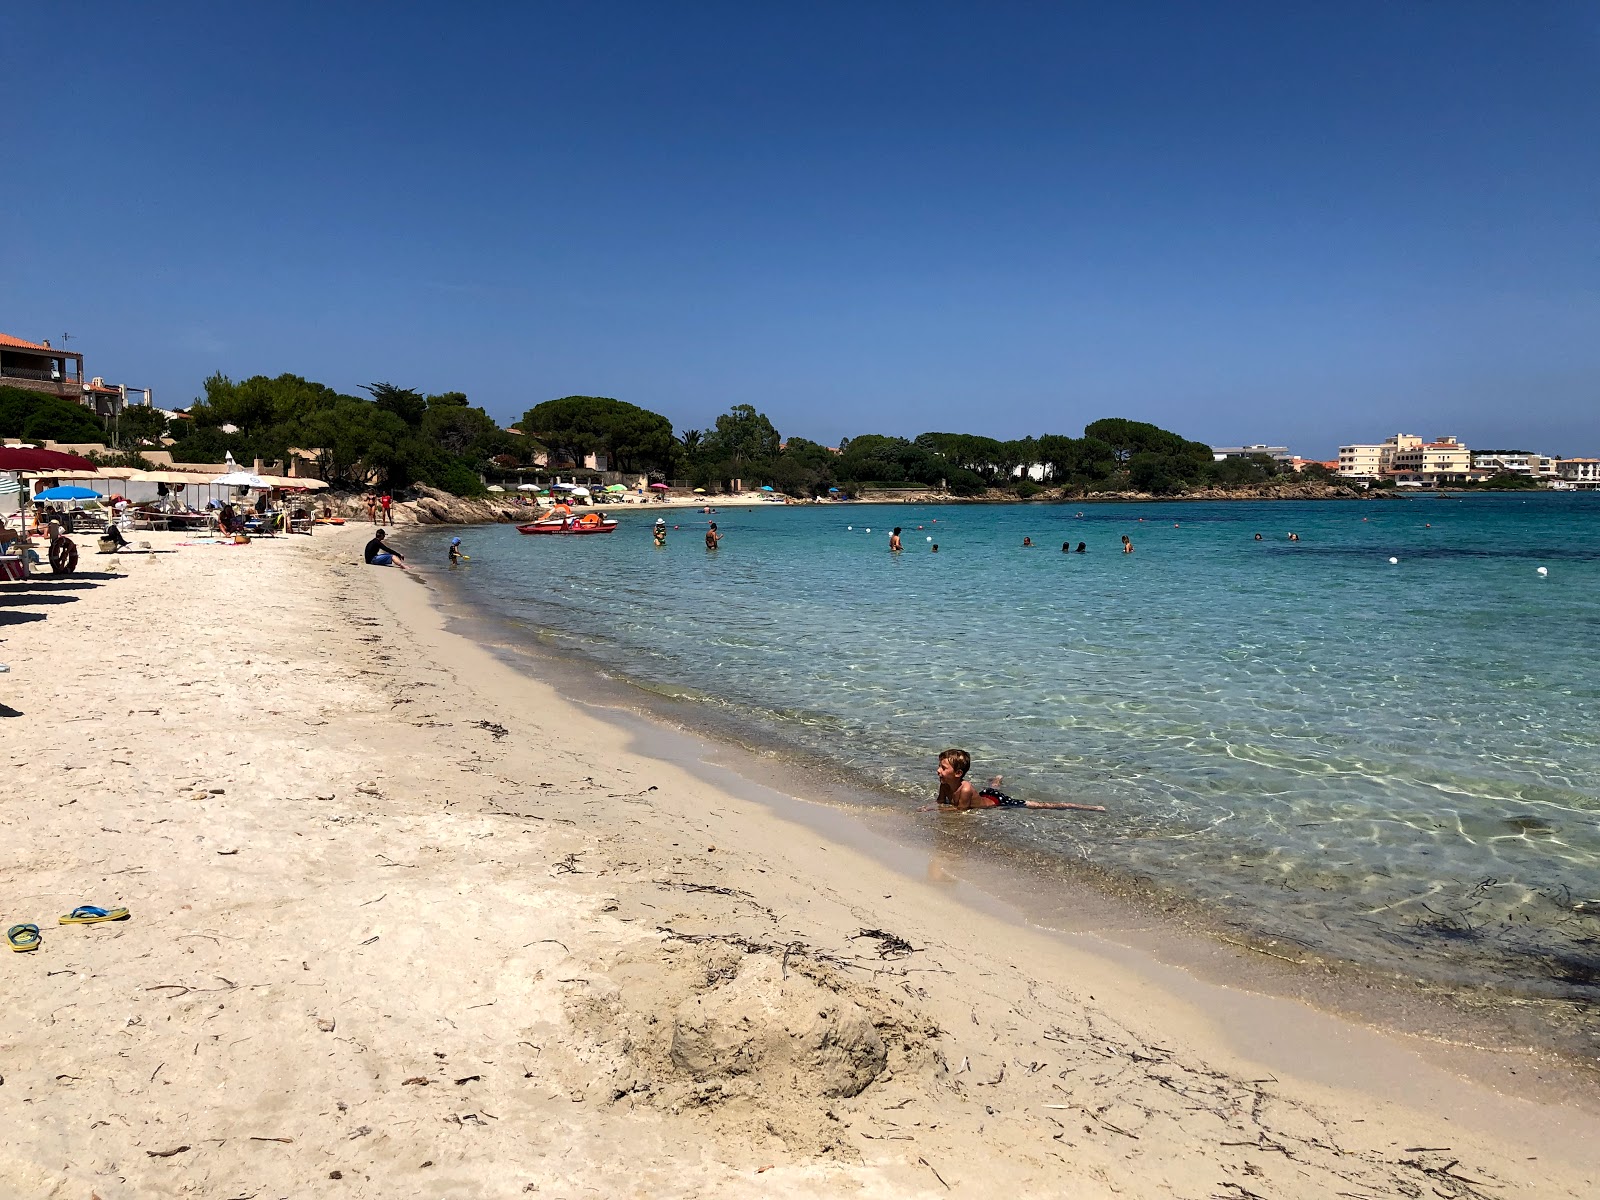 Fotografie cu Quinta Spiaggia cu o suprafață de nisip strălucitor